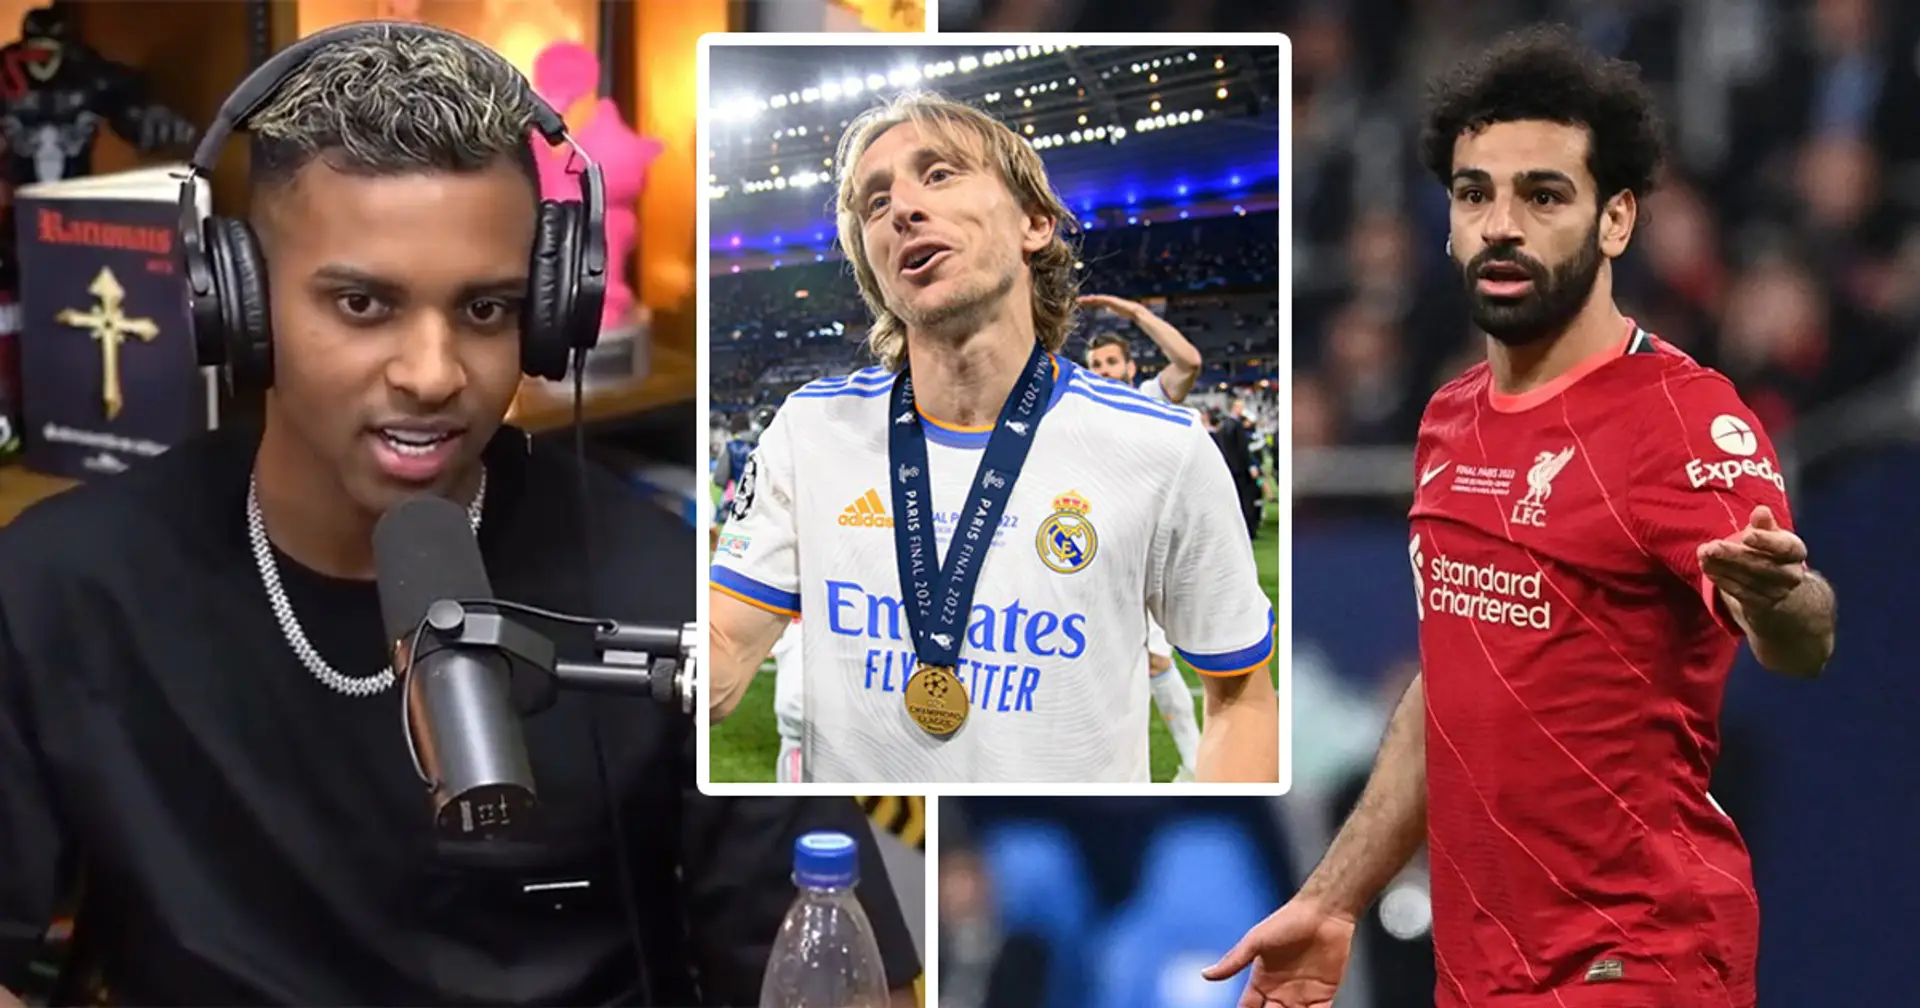 "La prochaine fois, réessayez": Rodrygo dit que Luka Modric s'est brutalement moqué de Mo Salah après avoir remporté la finale de la LDC